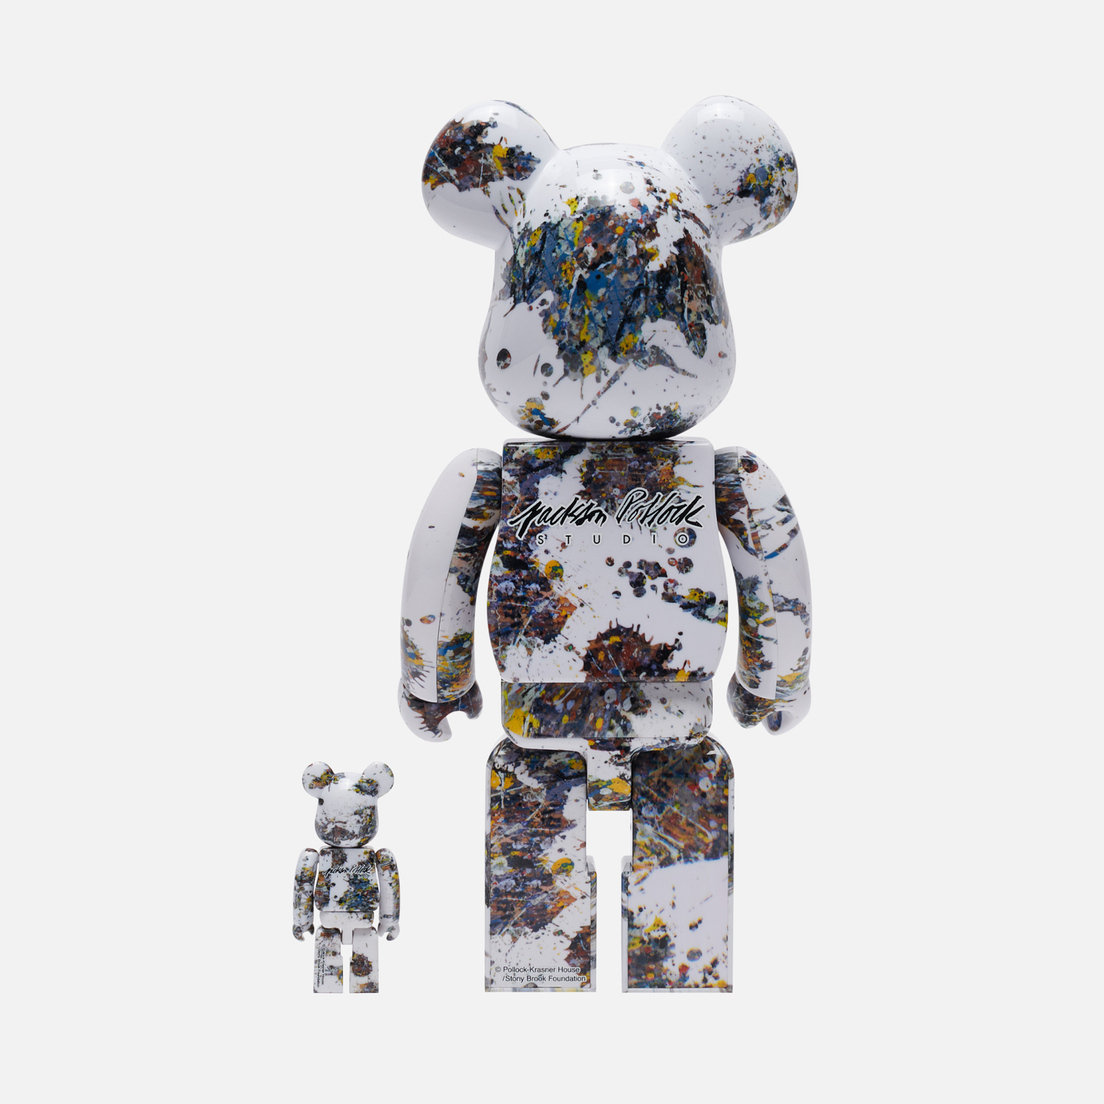 Medicom Toy Игрушка Jackson Pollock Studio Splash 100% & 400%